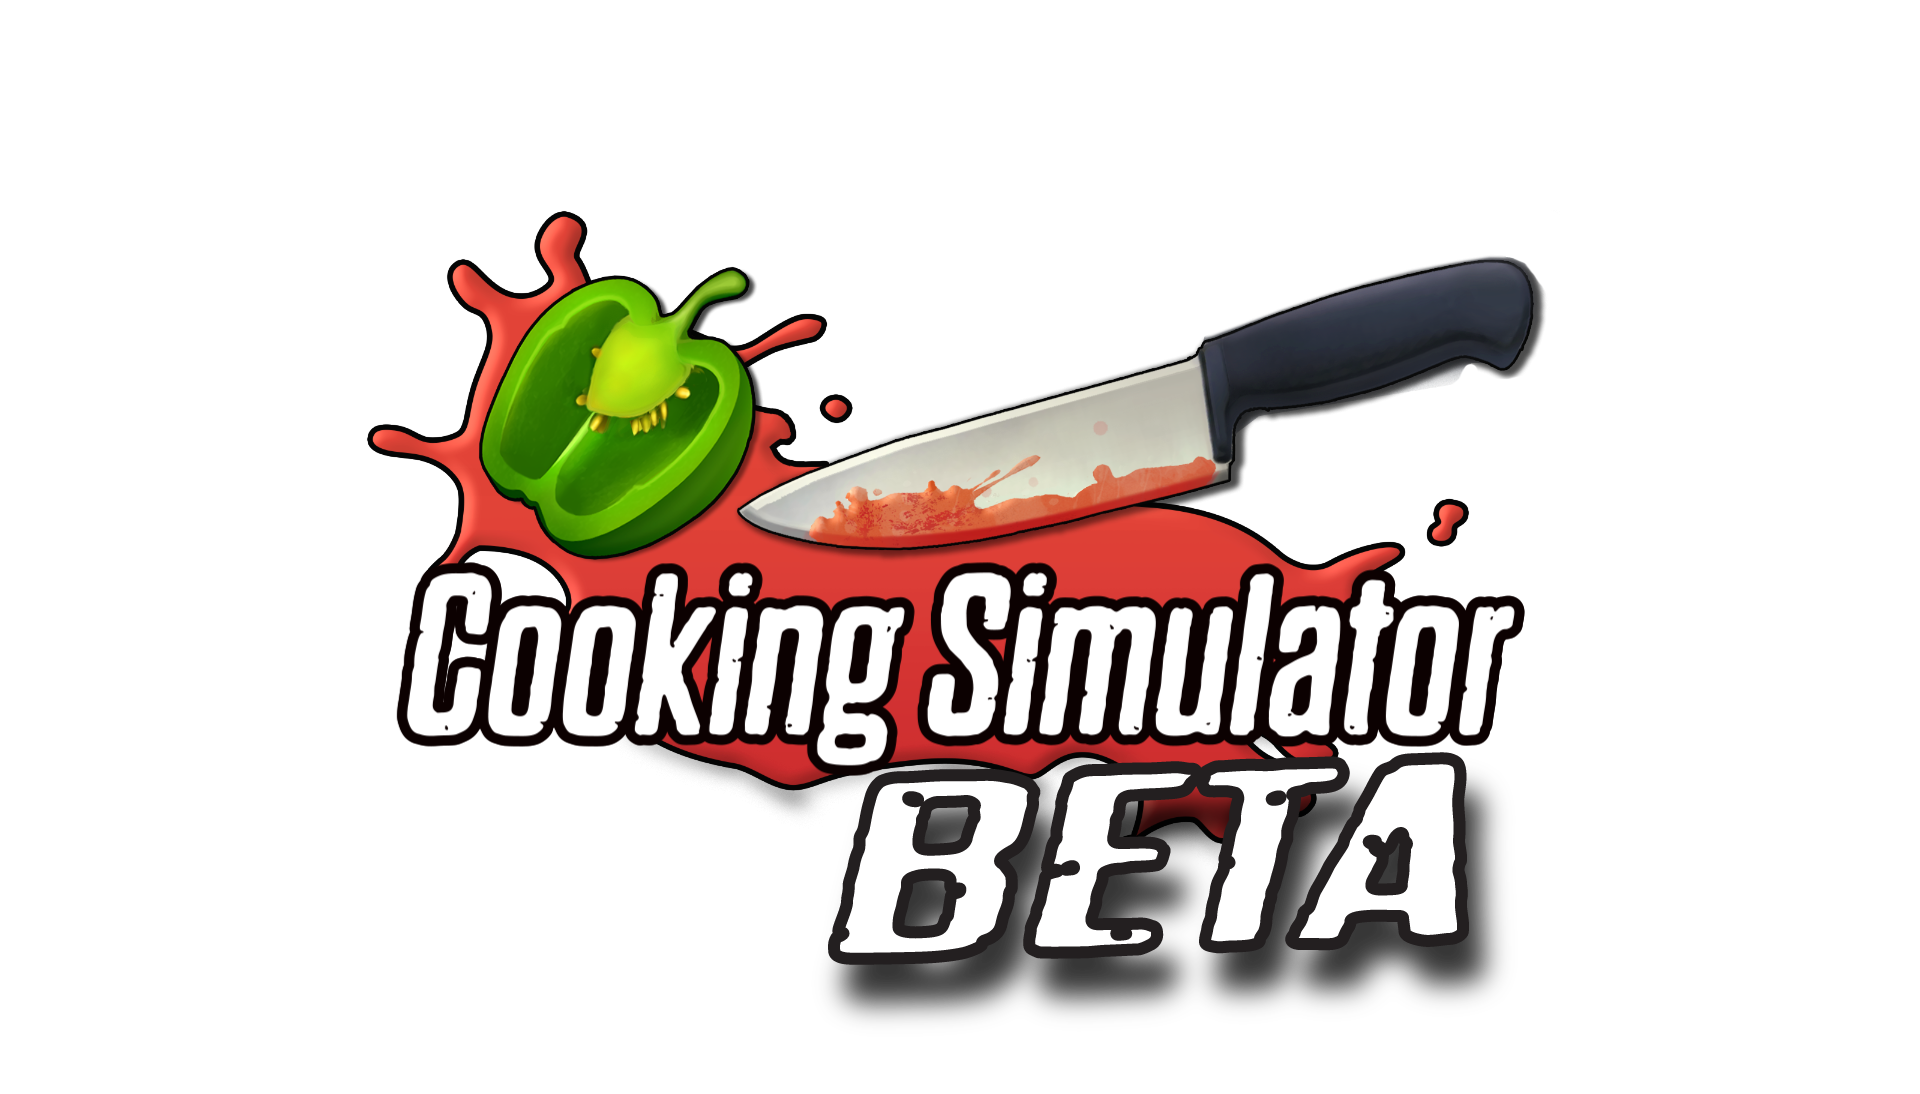 Кукинг симулятор 2. Значок кукинг симулятор. Логотип кукинг симулятора. Cooking Simulator логотип.